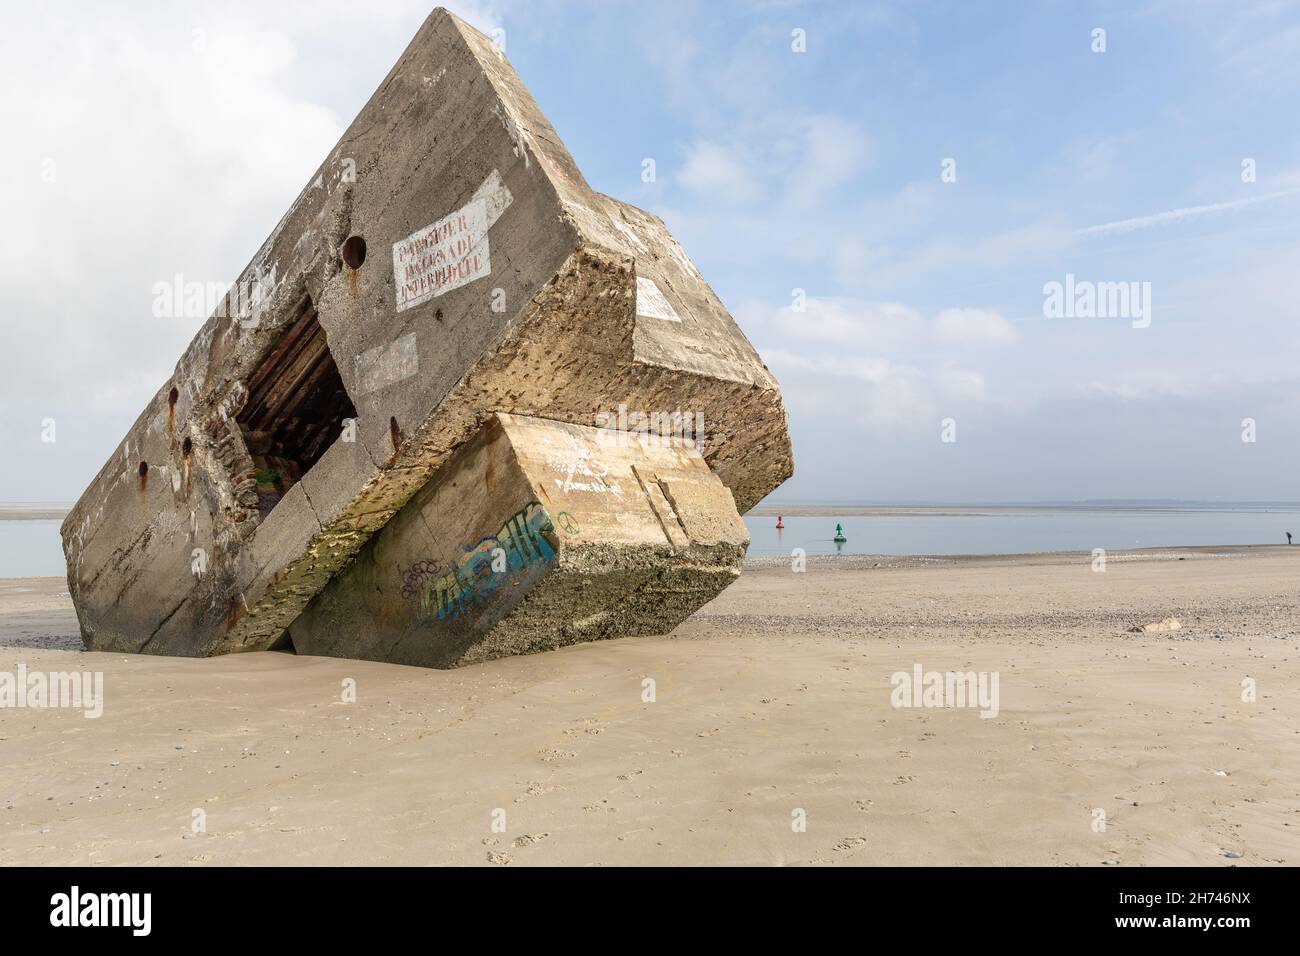 Un bunker du mur de l'Atlantique est coincé sur la plage de Hourdel.Baie de somme, France. Banque D'Images